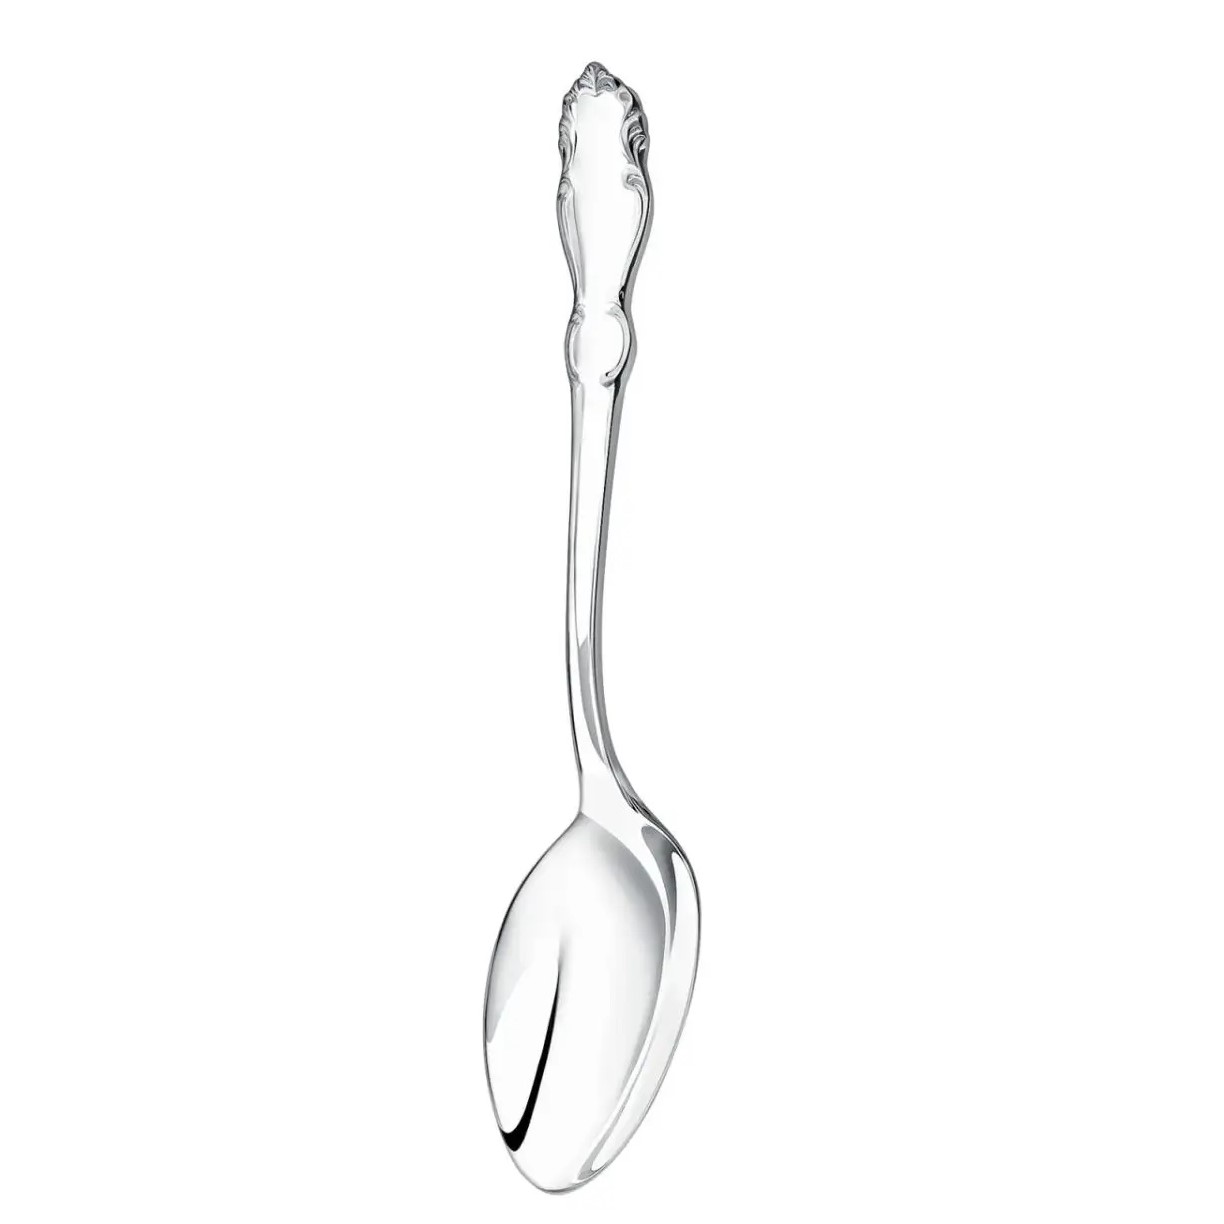 Nickel silver spoons